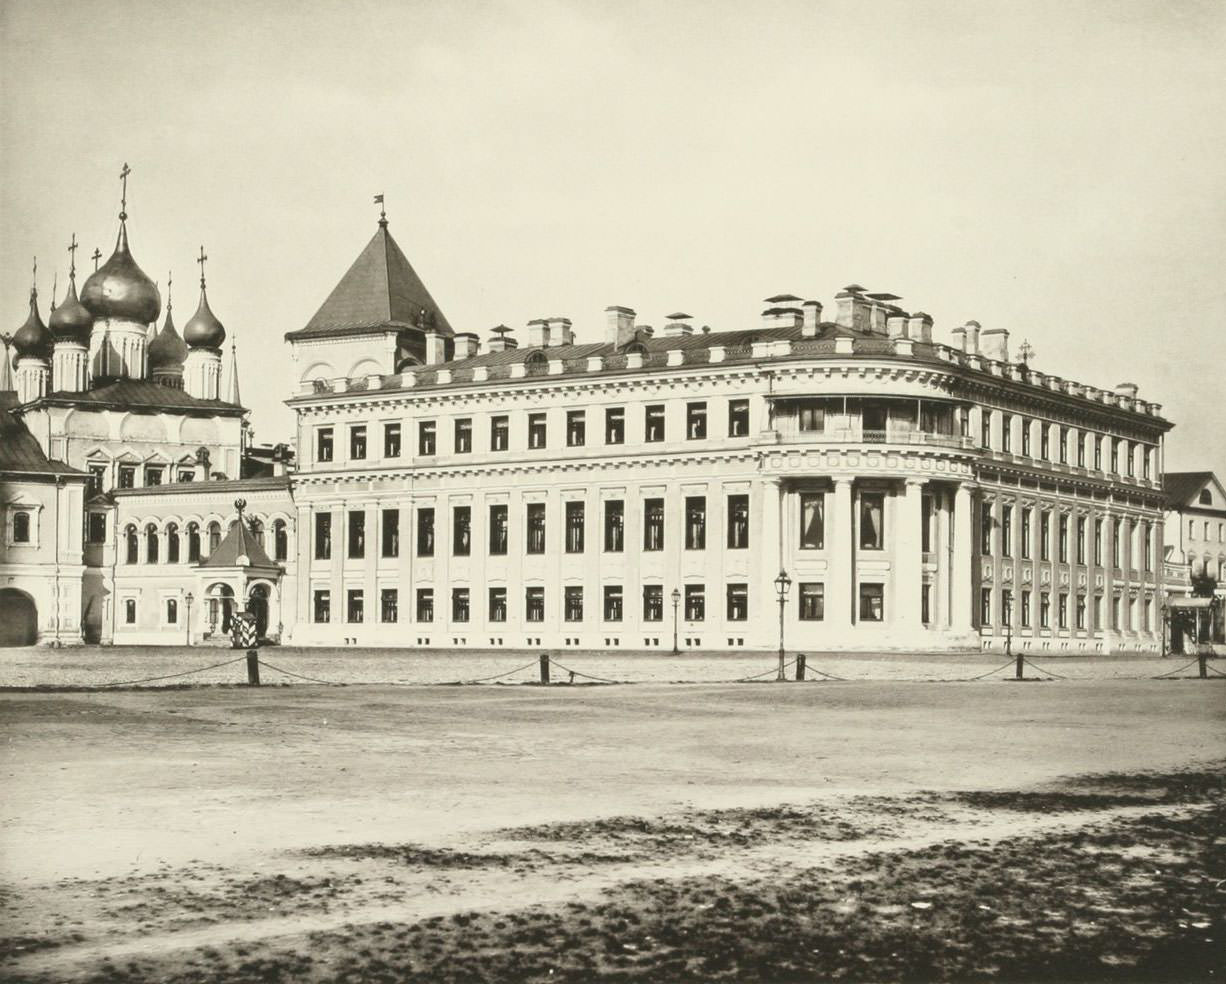 Nikolaevsky Palace, 1880s